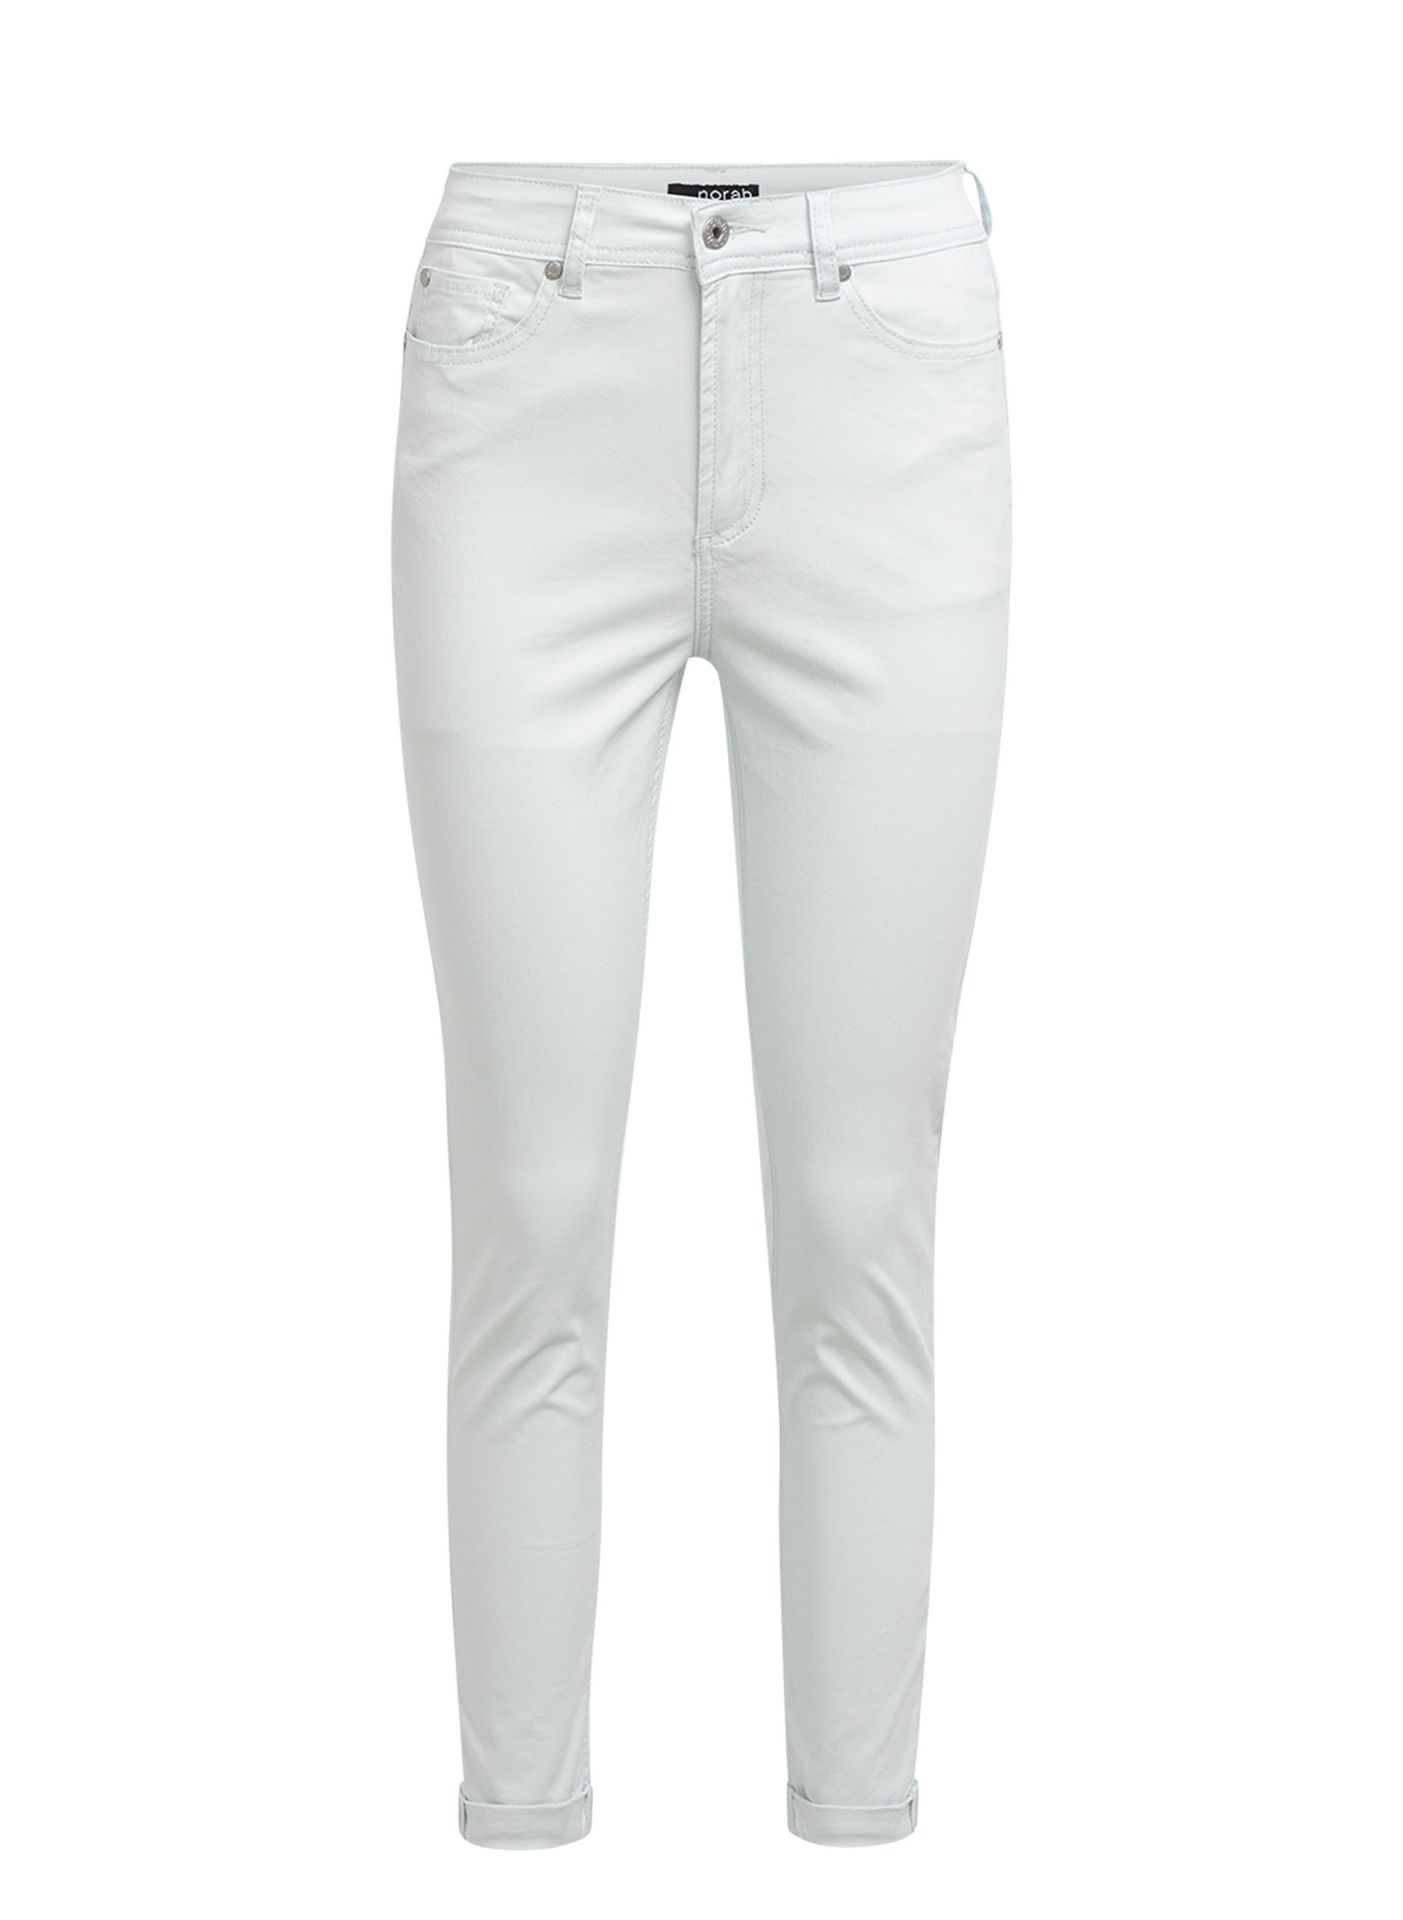 Norah Mintgroene jeans mint 211002-502